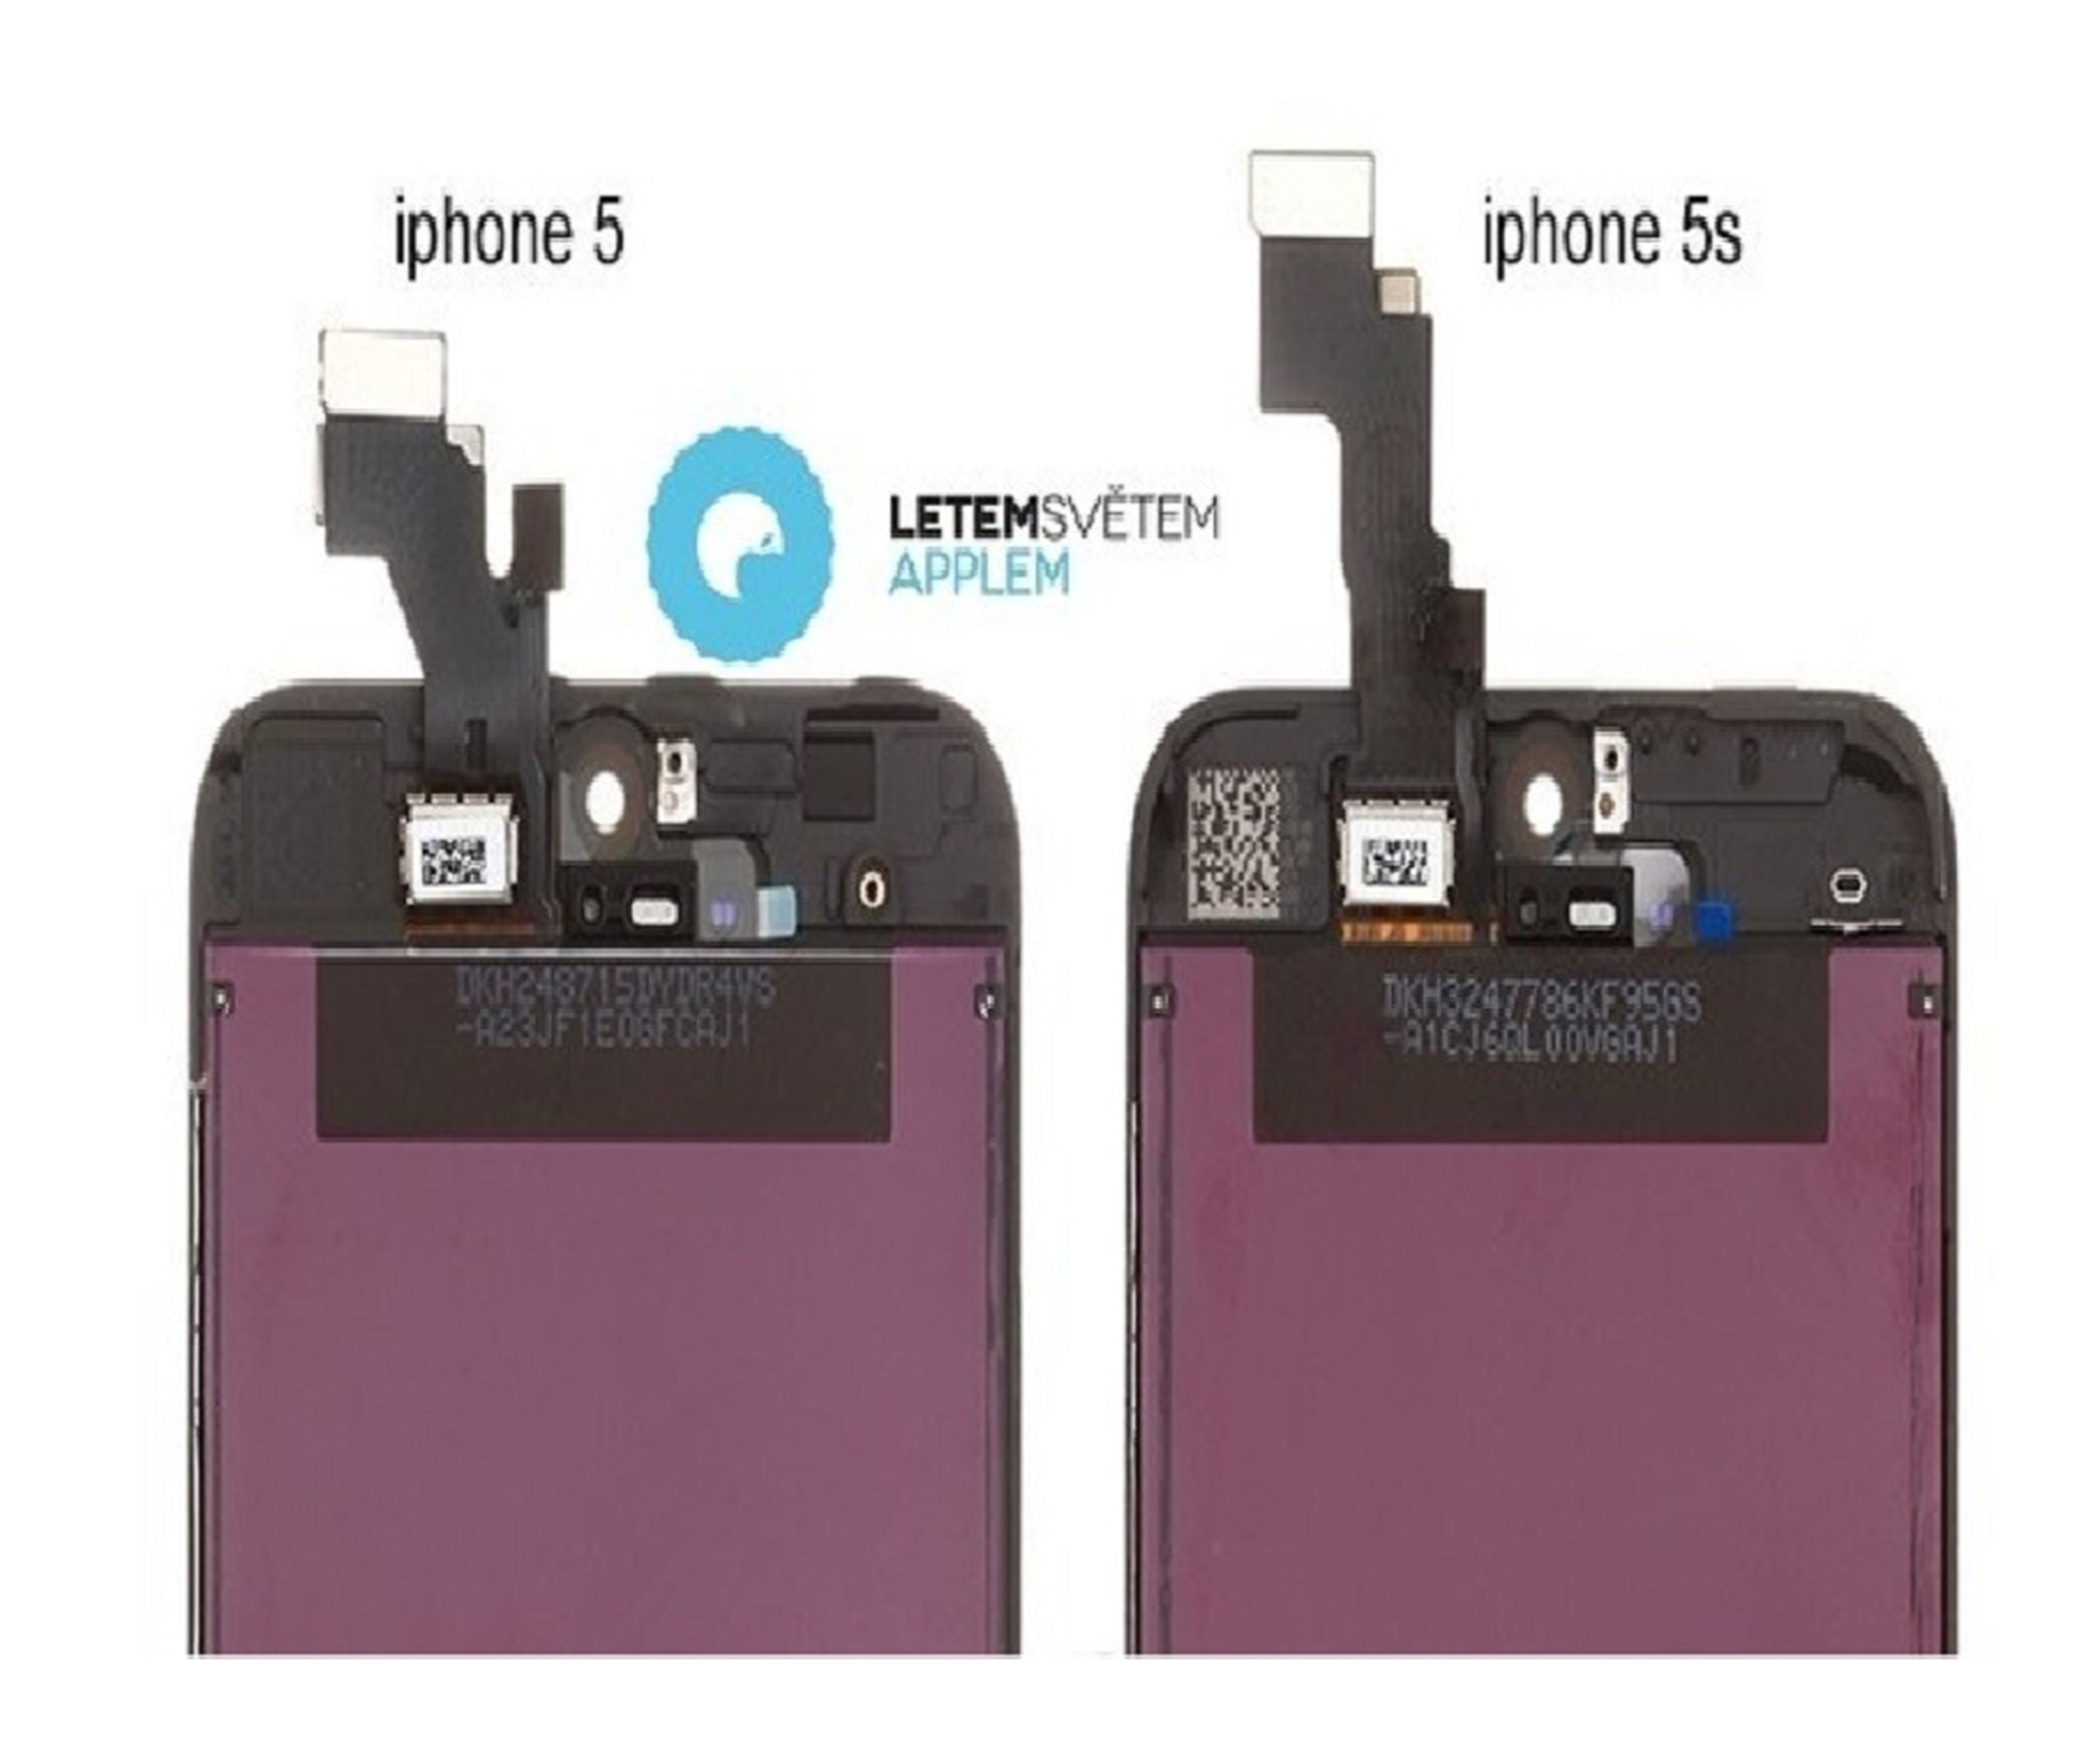 Nuevas imágenes diferencian el iPhone 5 y el iPhone 5S